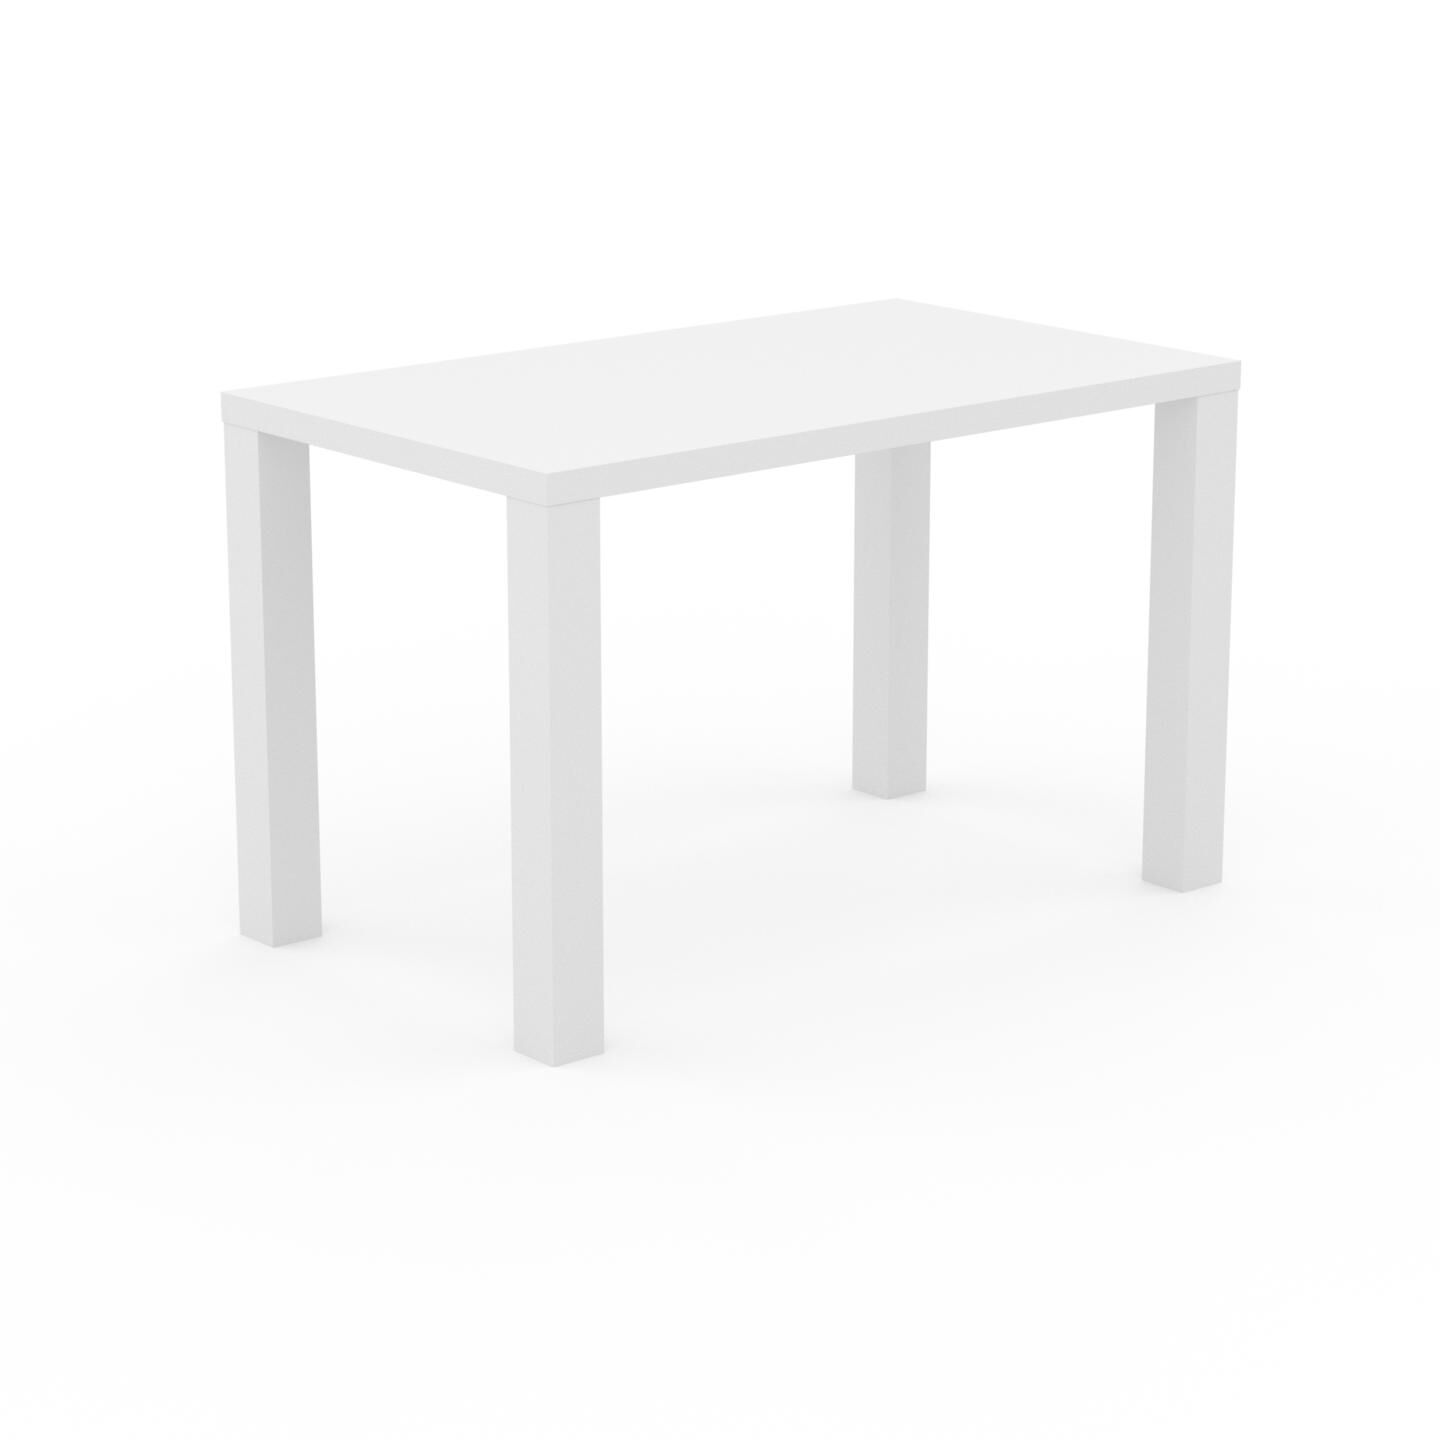 MYCS Bureau - Blanc, design contemporain, table de travail, fonctionnelle - 120 x 76 x 70 cm, modulable